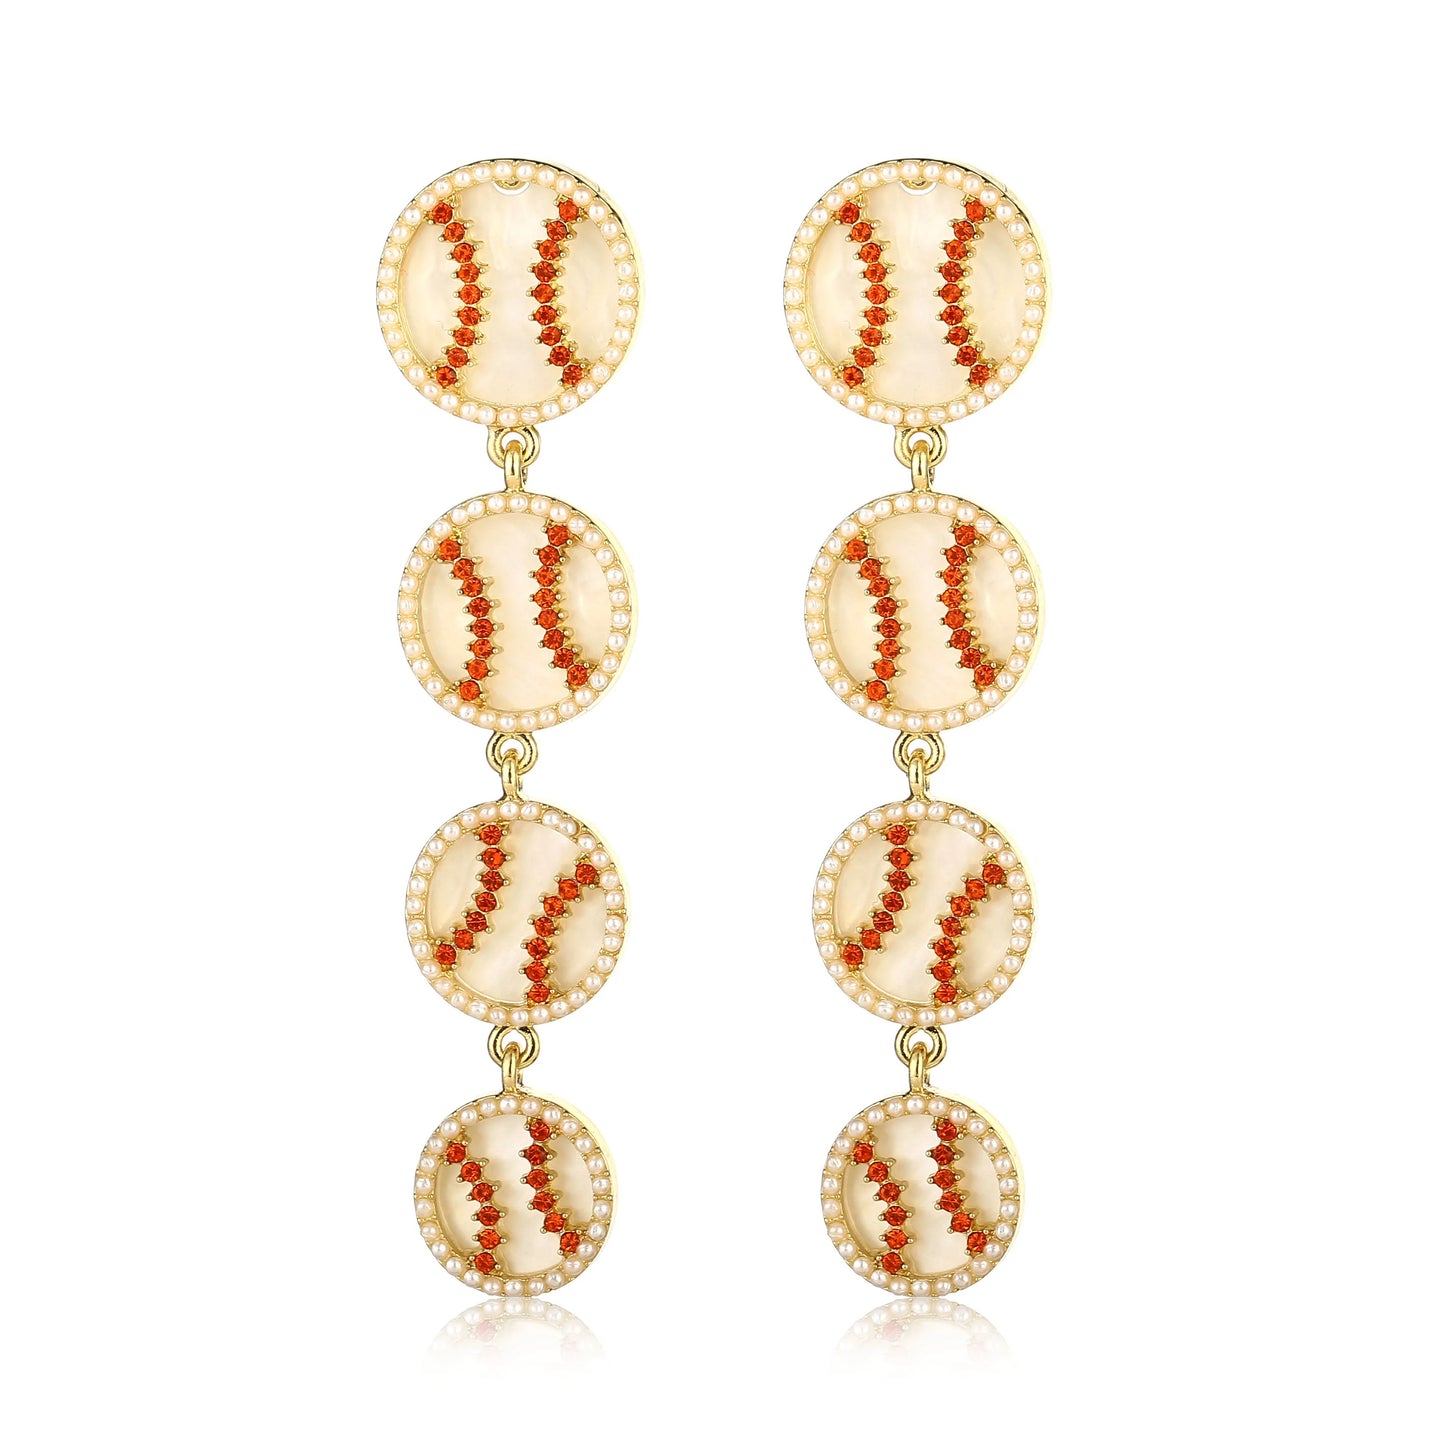 Beisbol Earrings